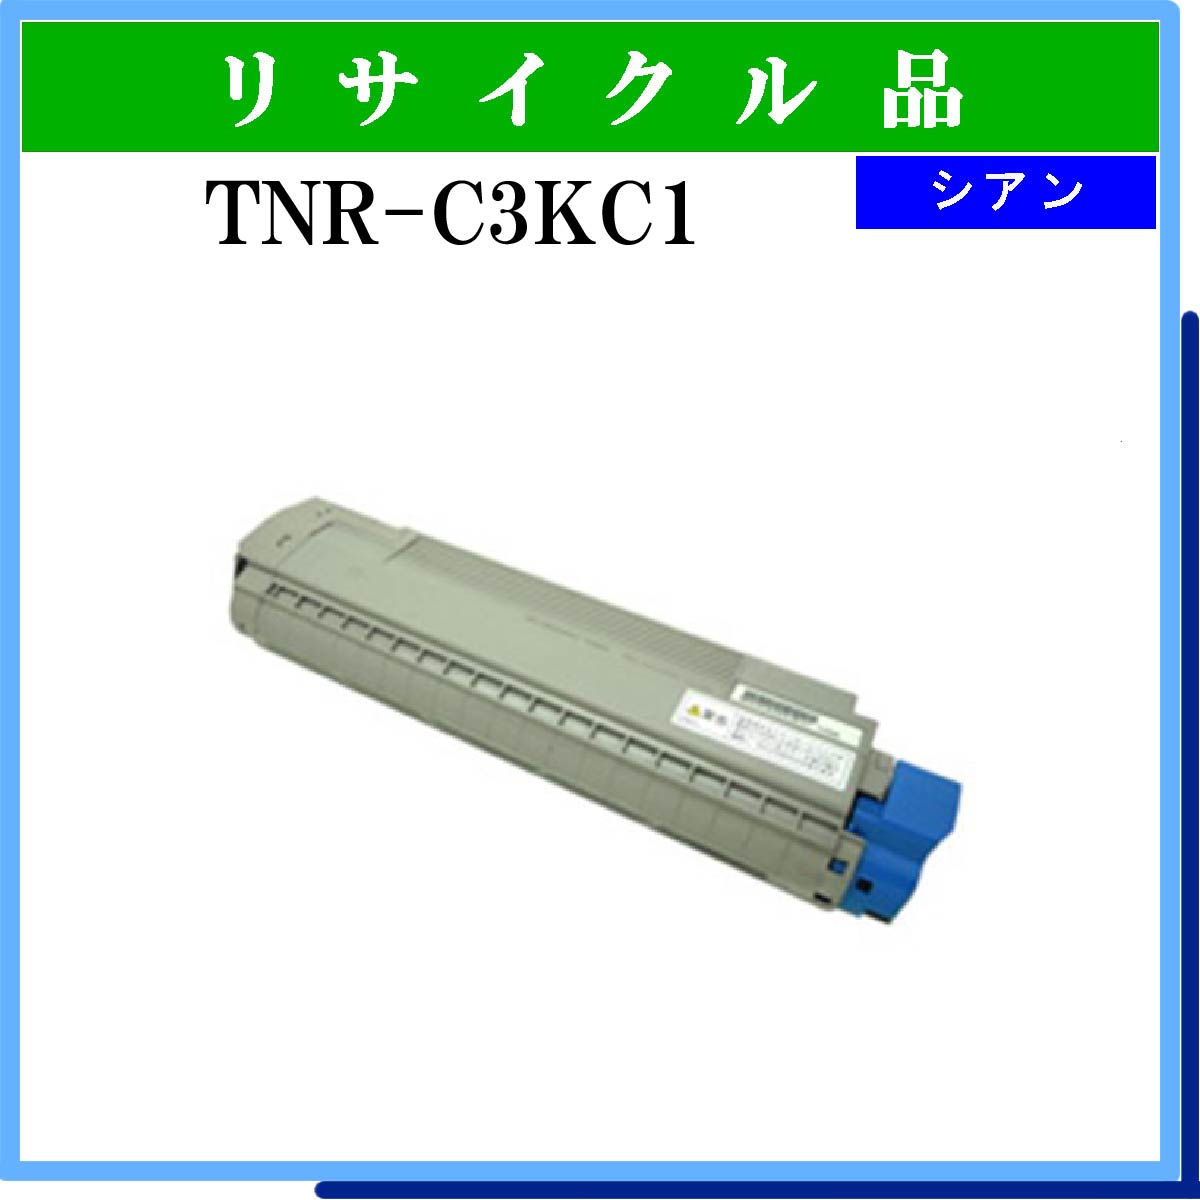 TNR-C3KC1